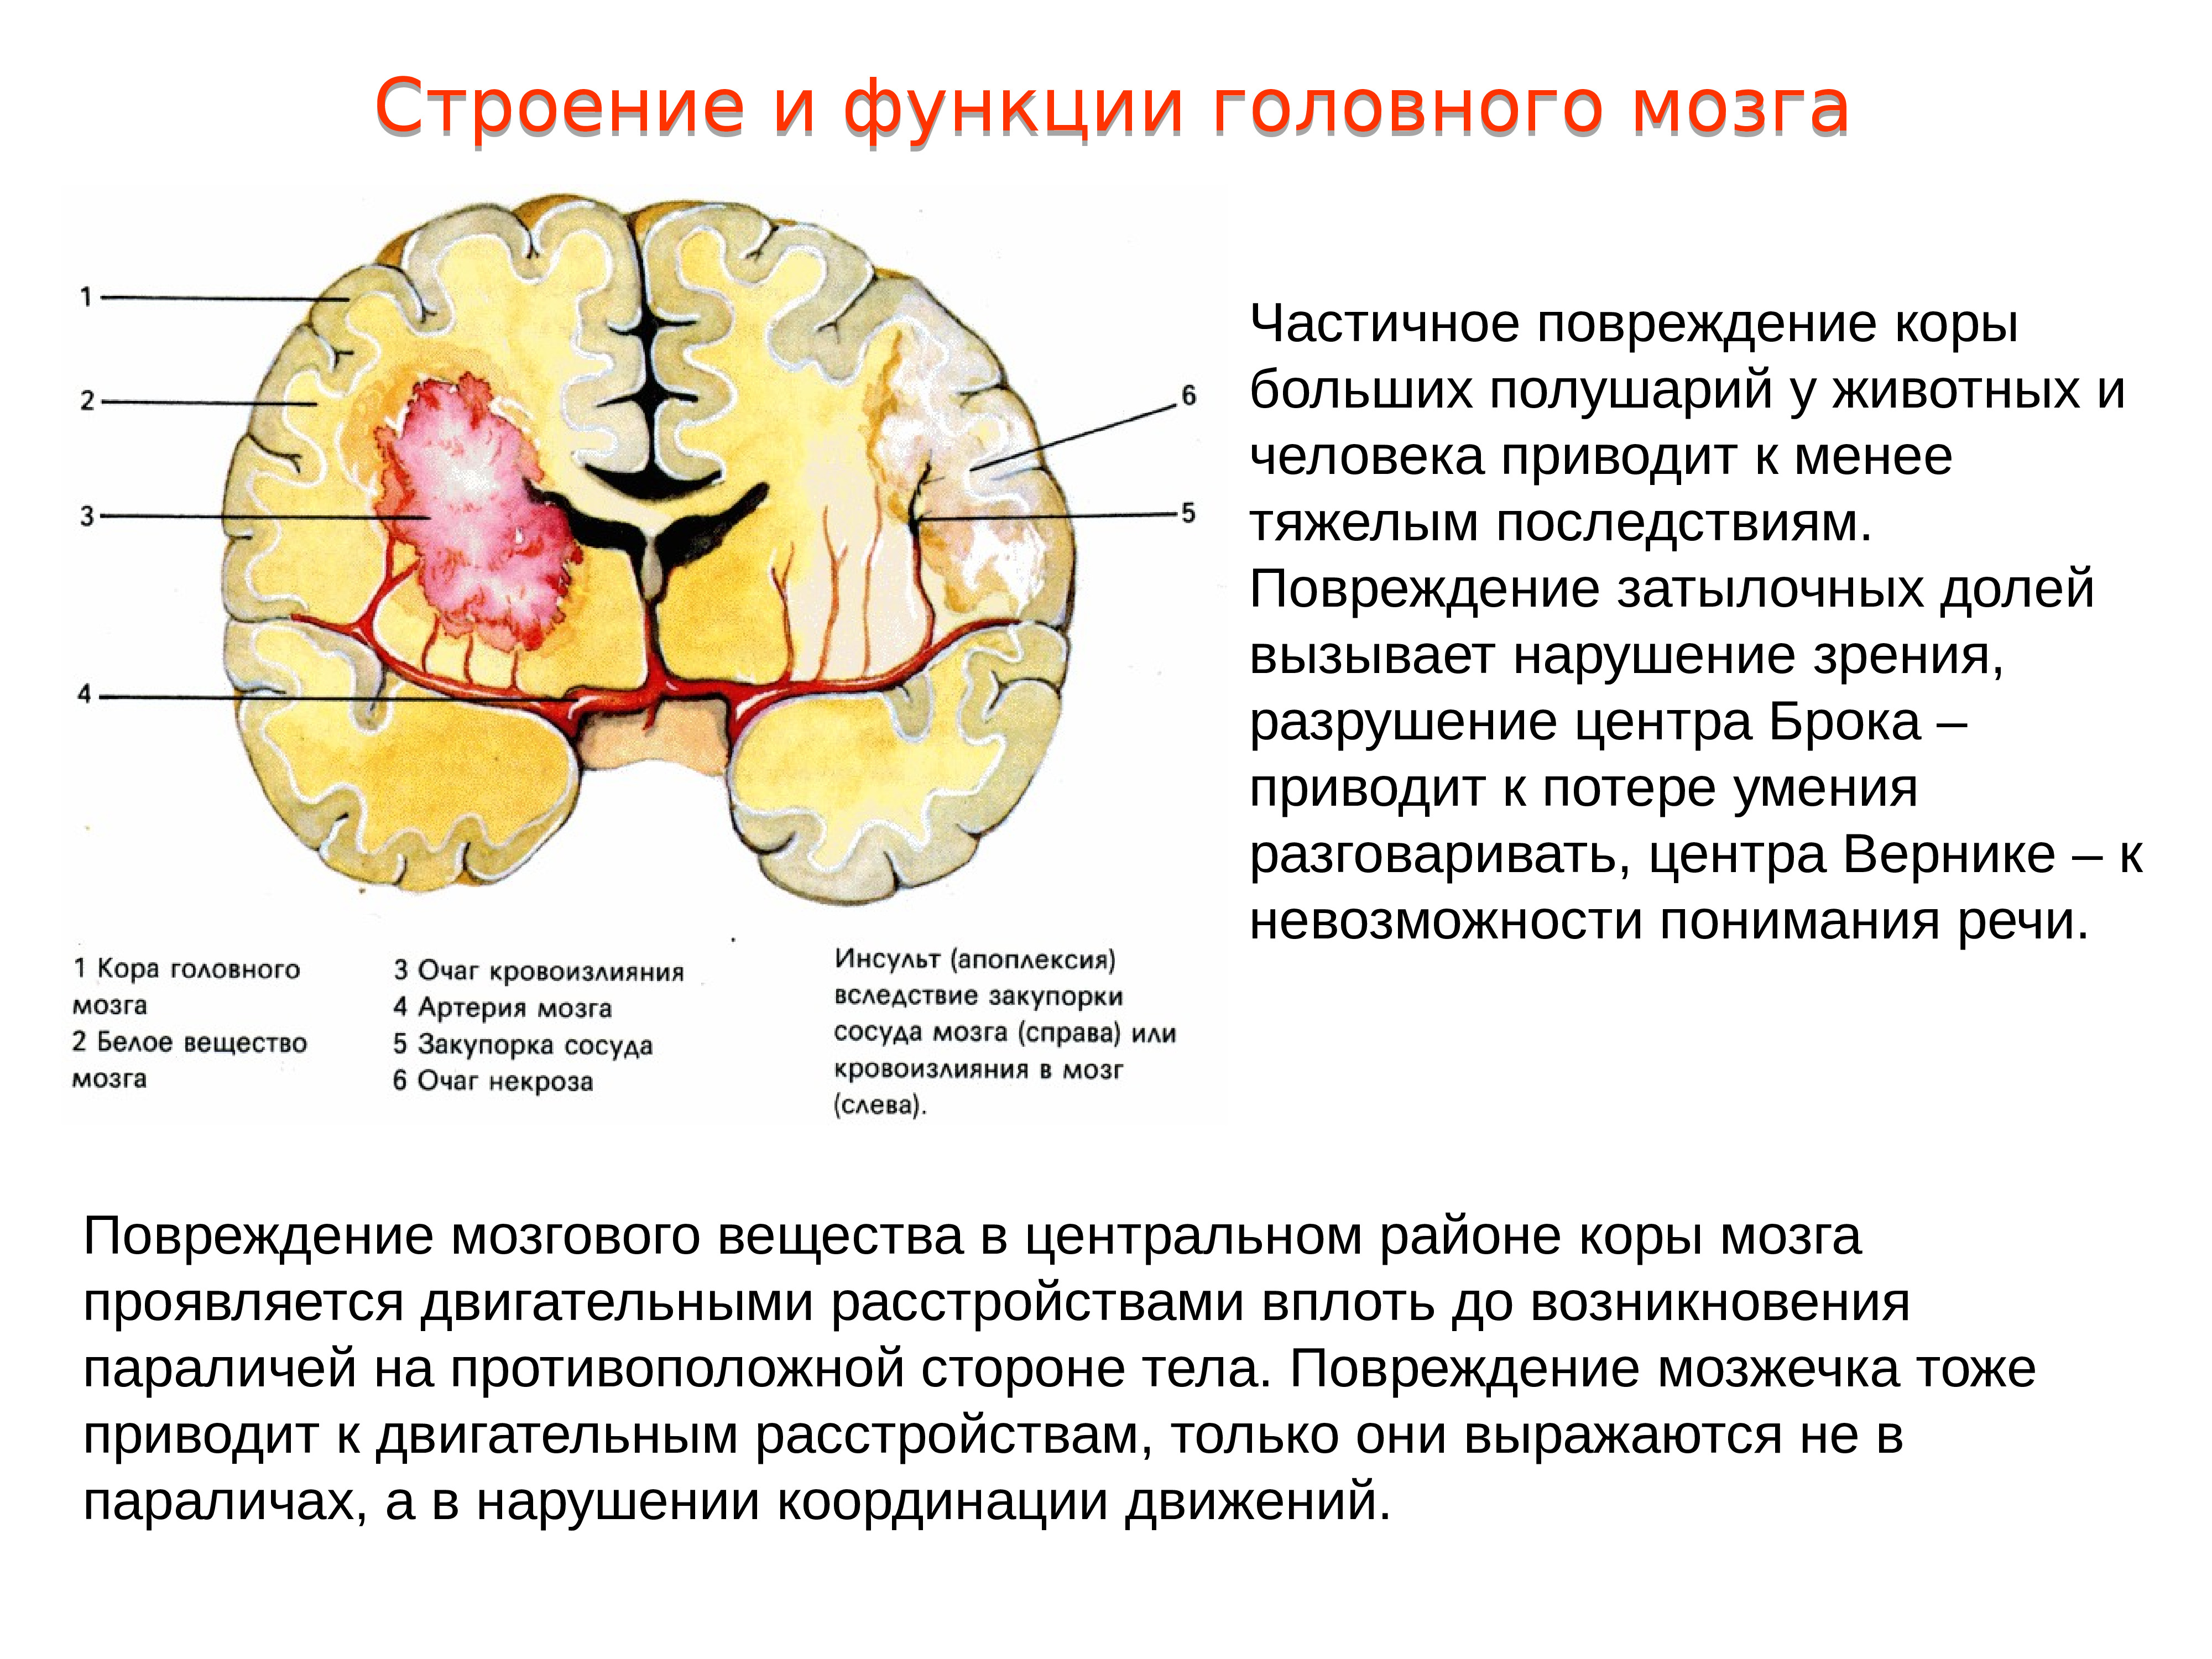 Признак жизни головного мозга. Локальное повреждение коры головного мозга. Повреждения затылочной доли мозга. Повреждение коры больших полушарий головного мозга.